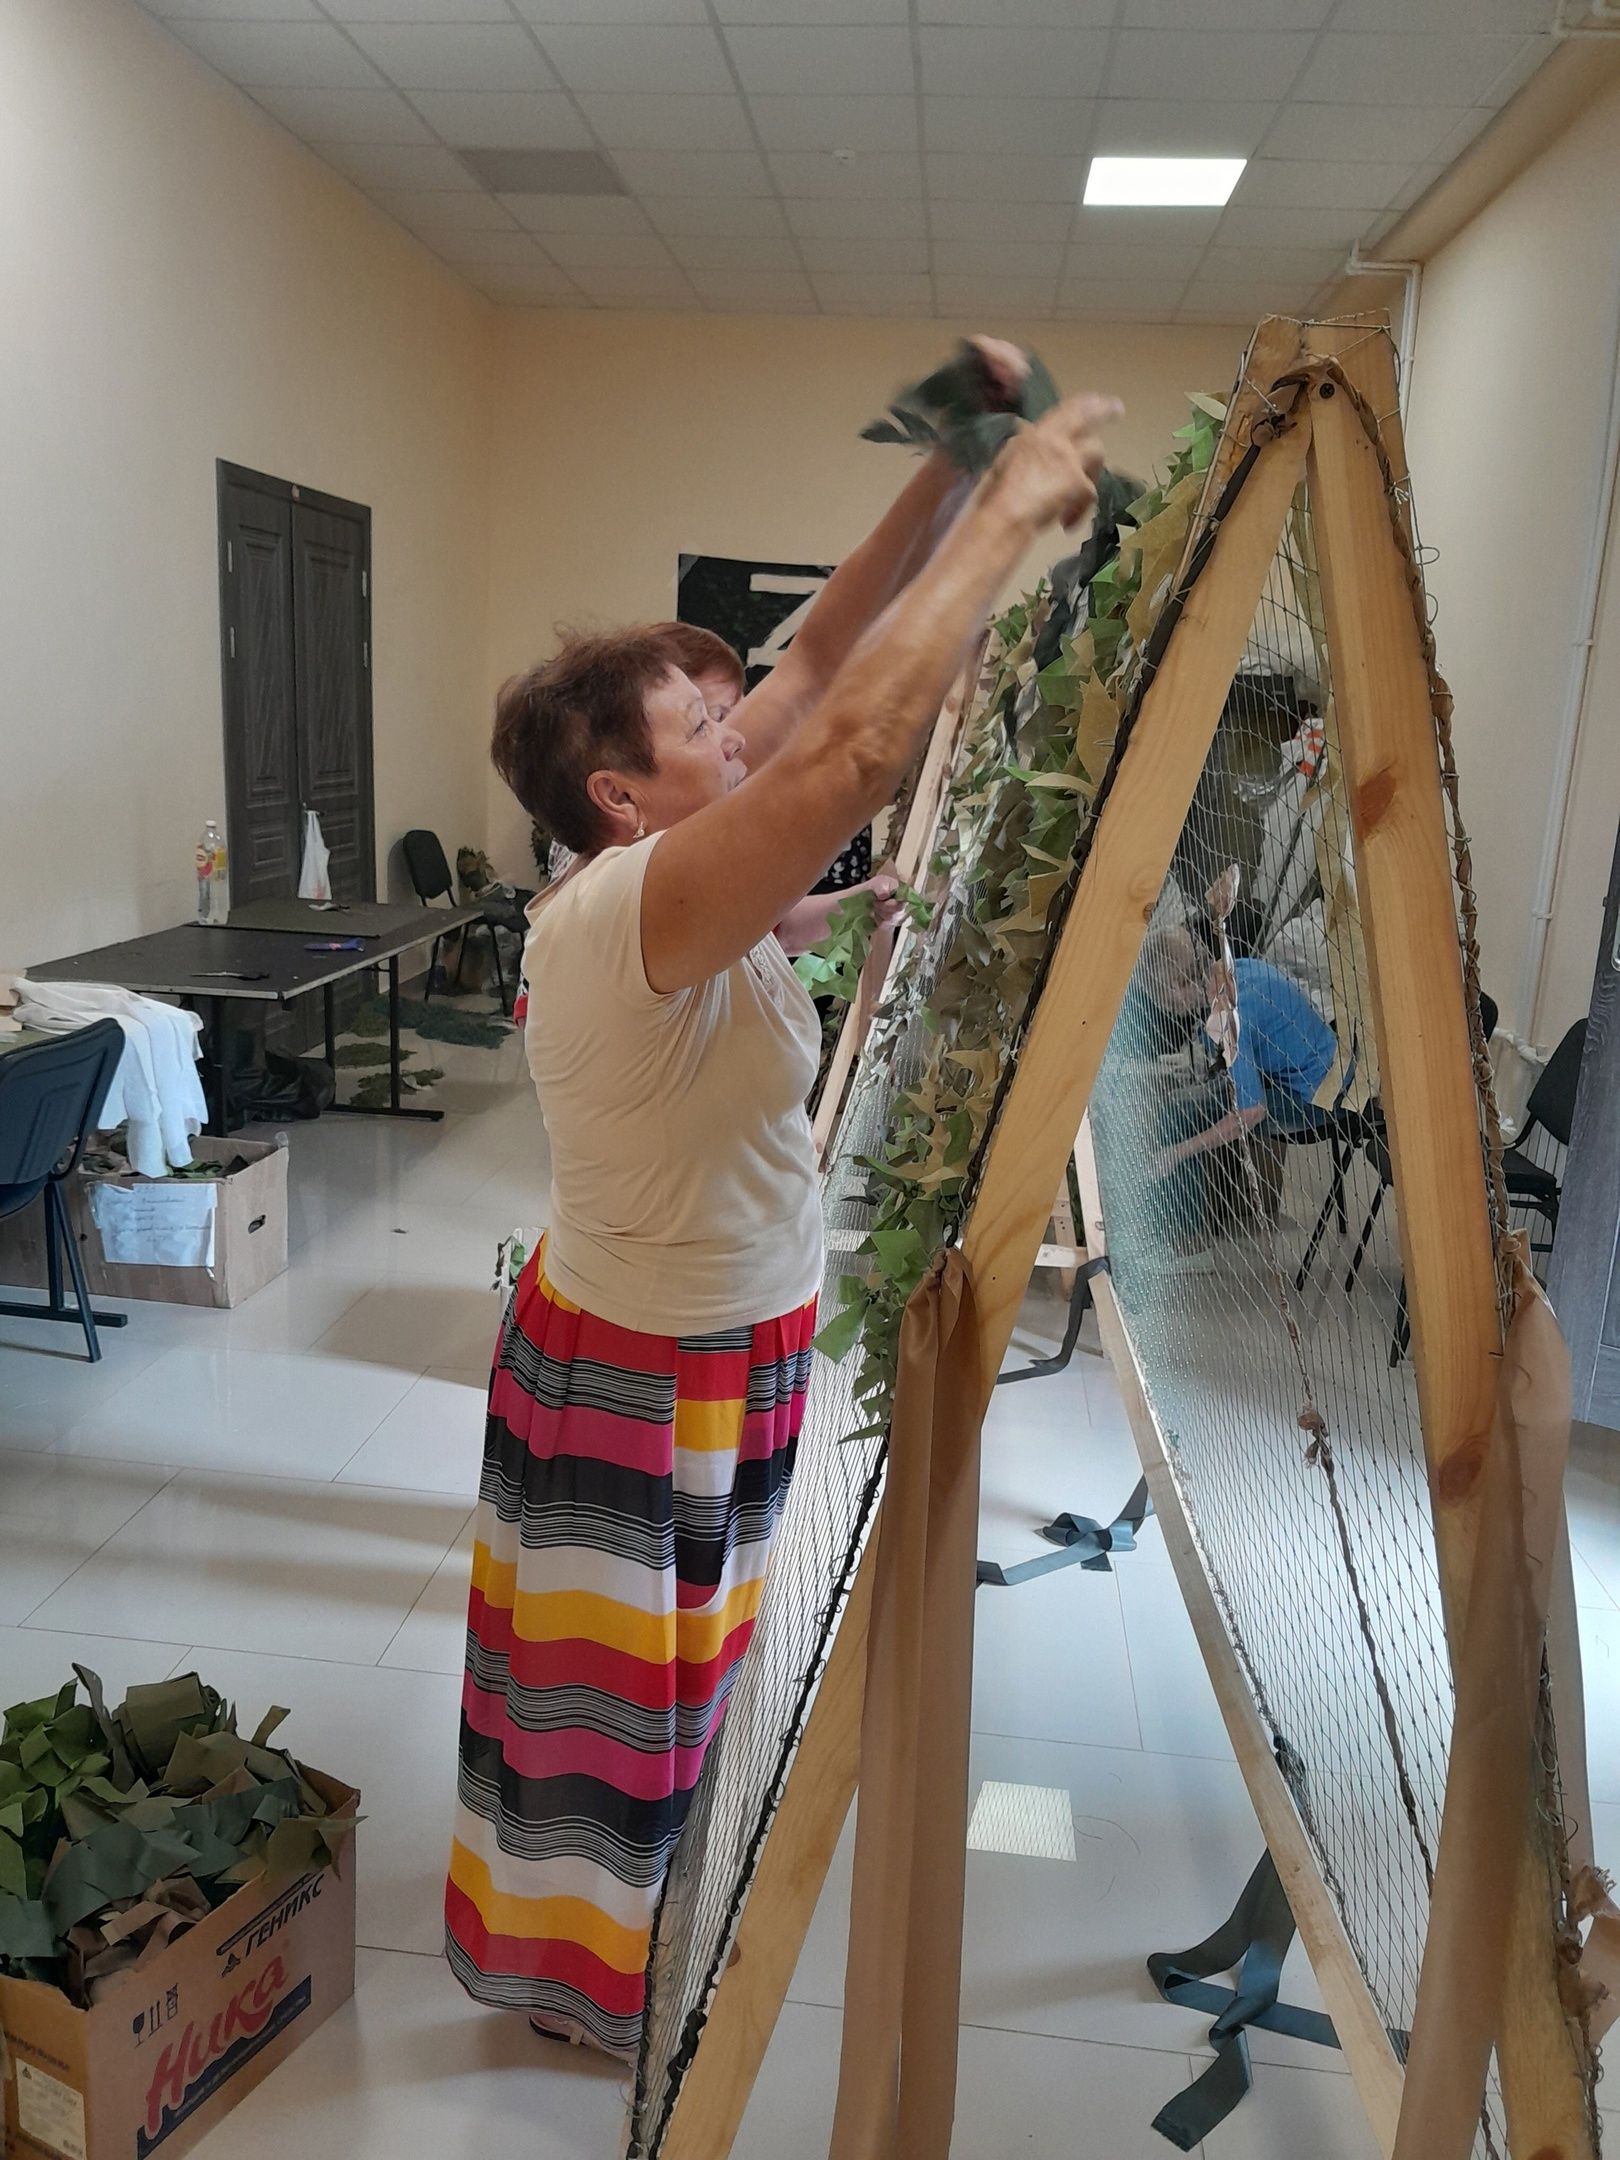 Совет ветеранов поселка Карабаш оказал помощь в плетении маскировочных сетей